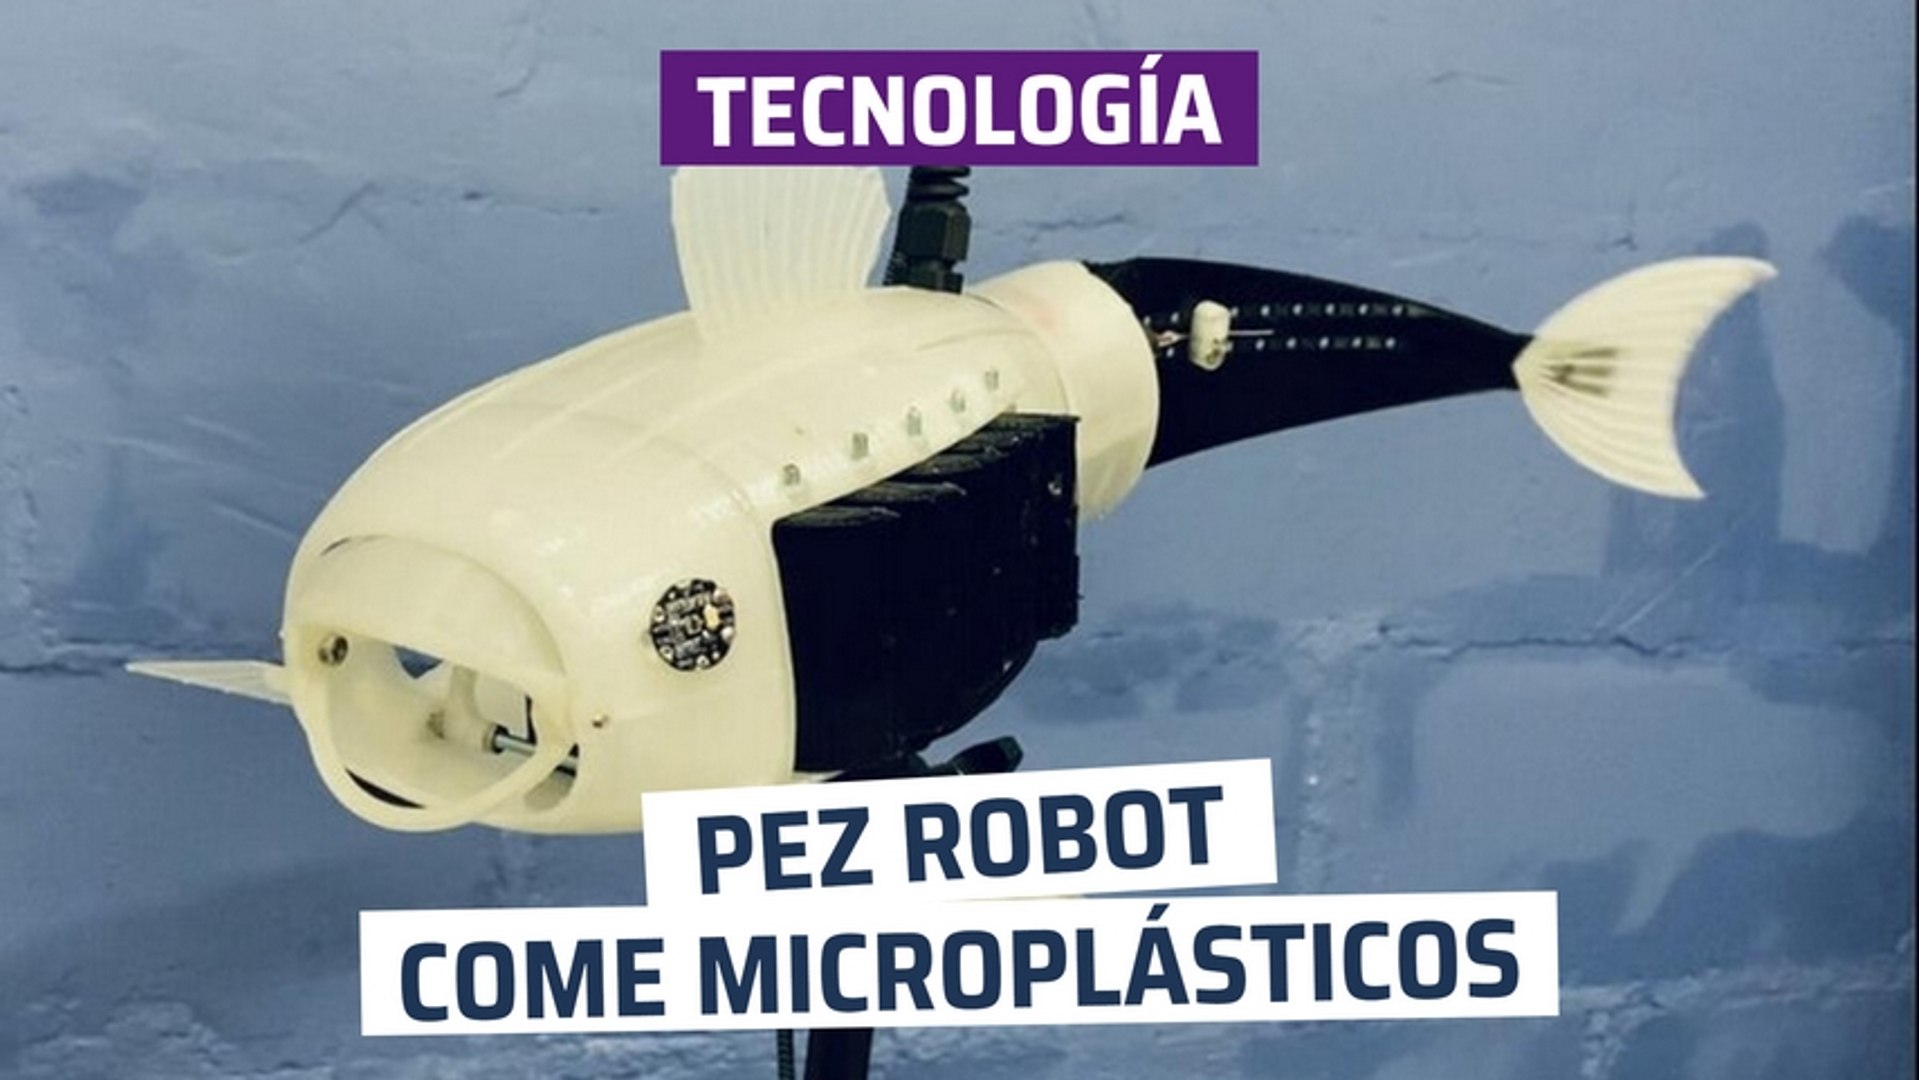 CH] Pez robot que come microplásticos - Vídeo Dailymotion